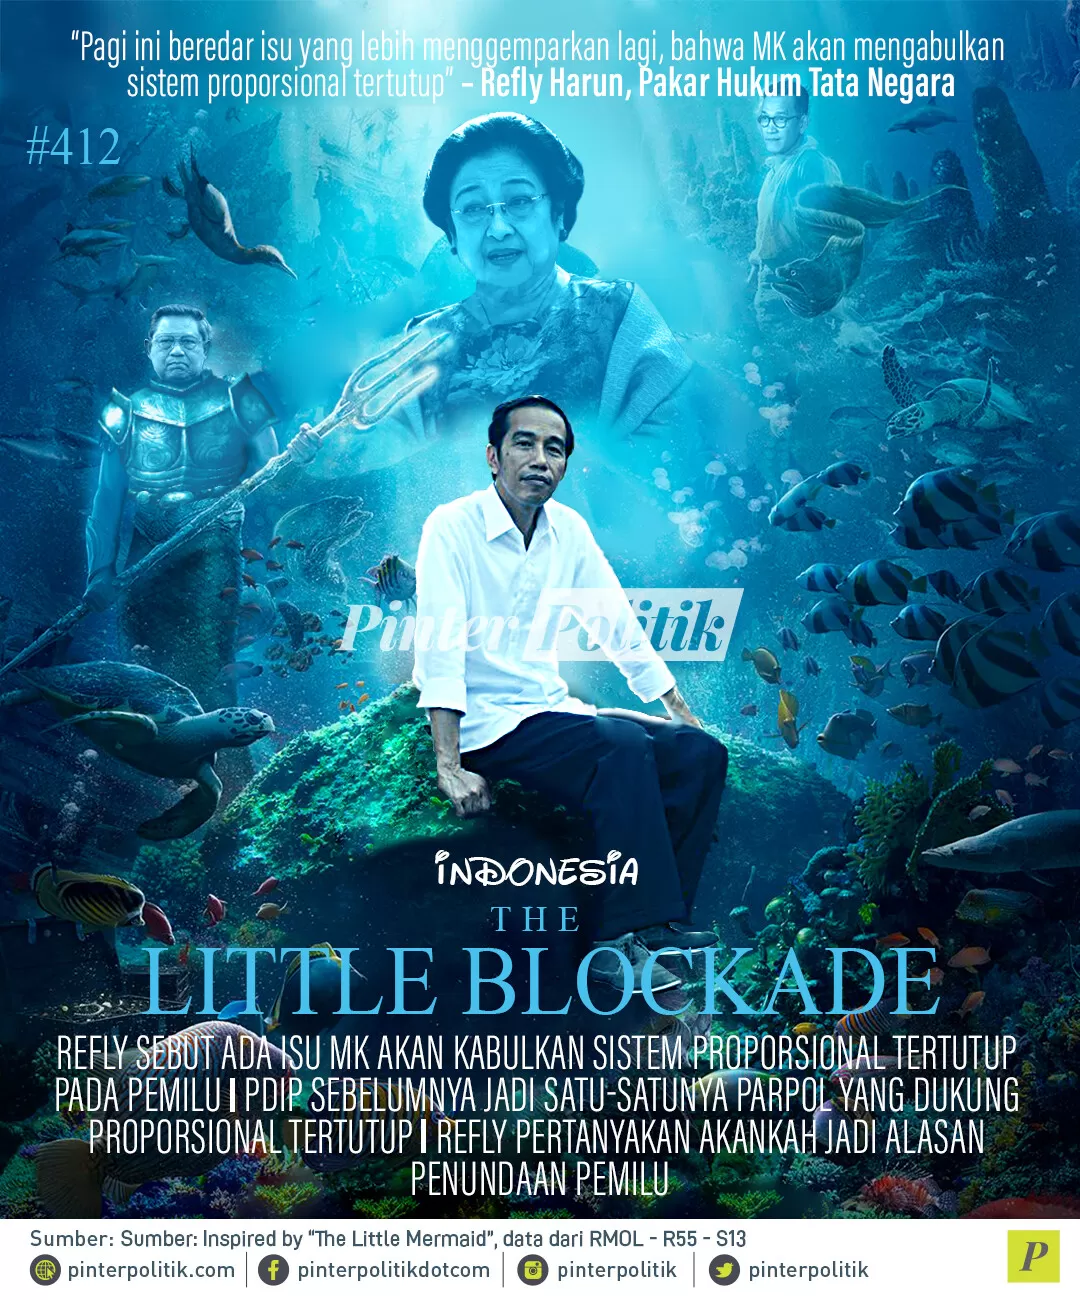 poster the little blokade 1